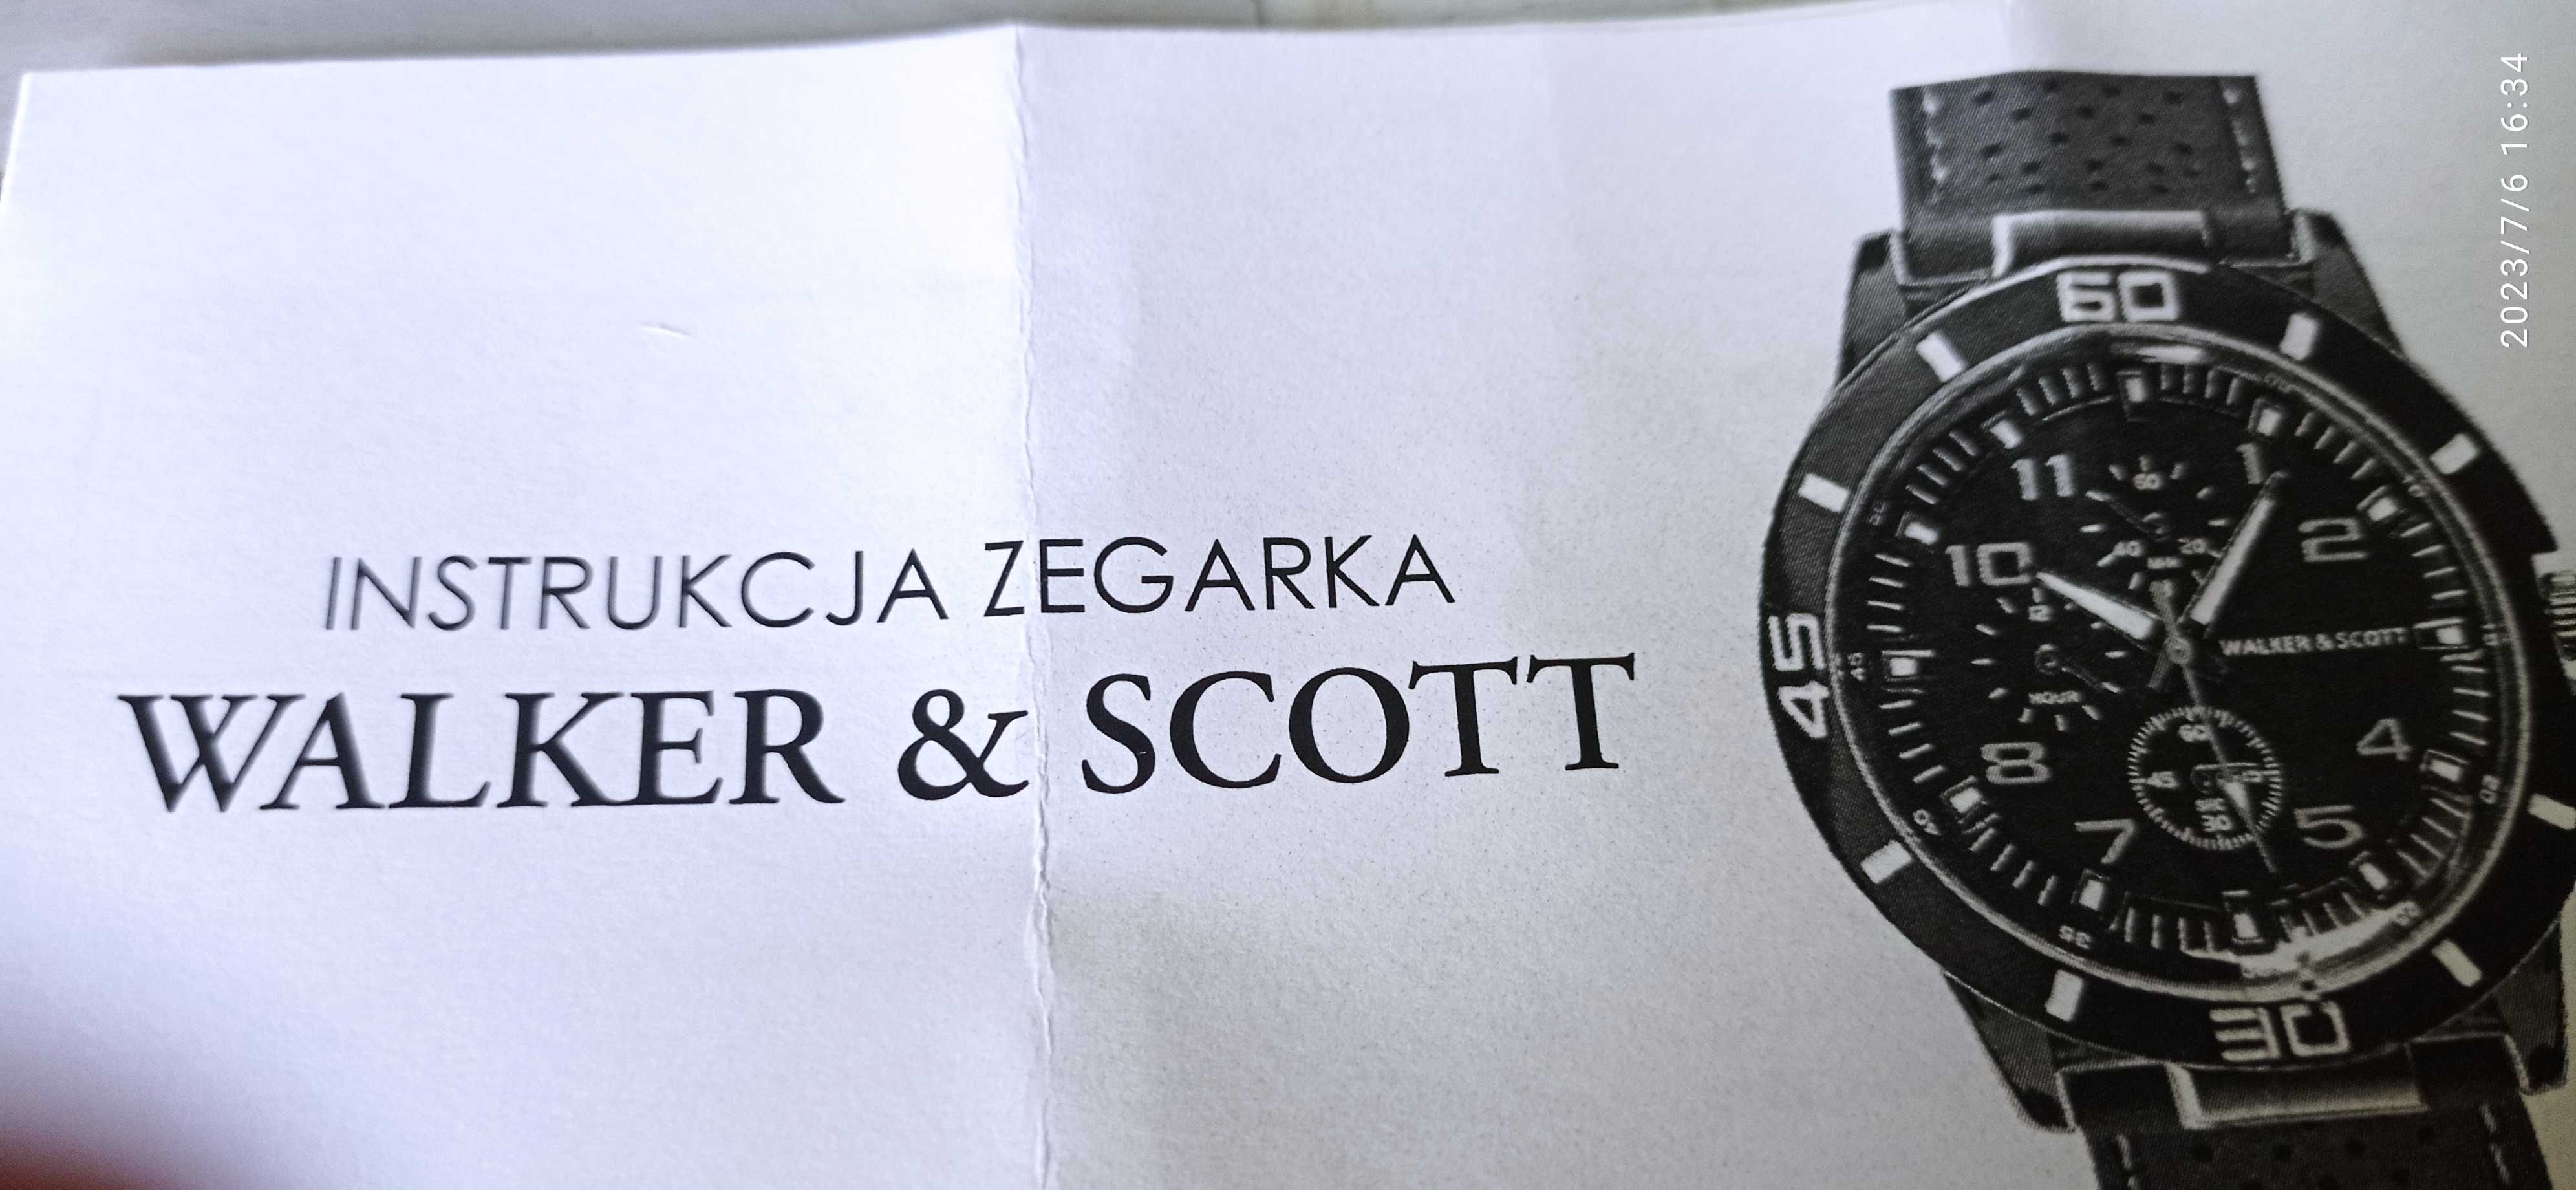 Zegarek elegancki WOLKER & SCOT, tył zegarka jest ze stali nierdzewnej